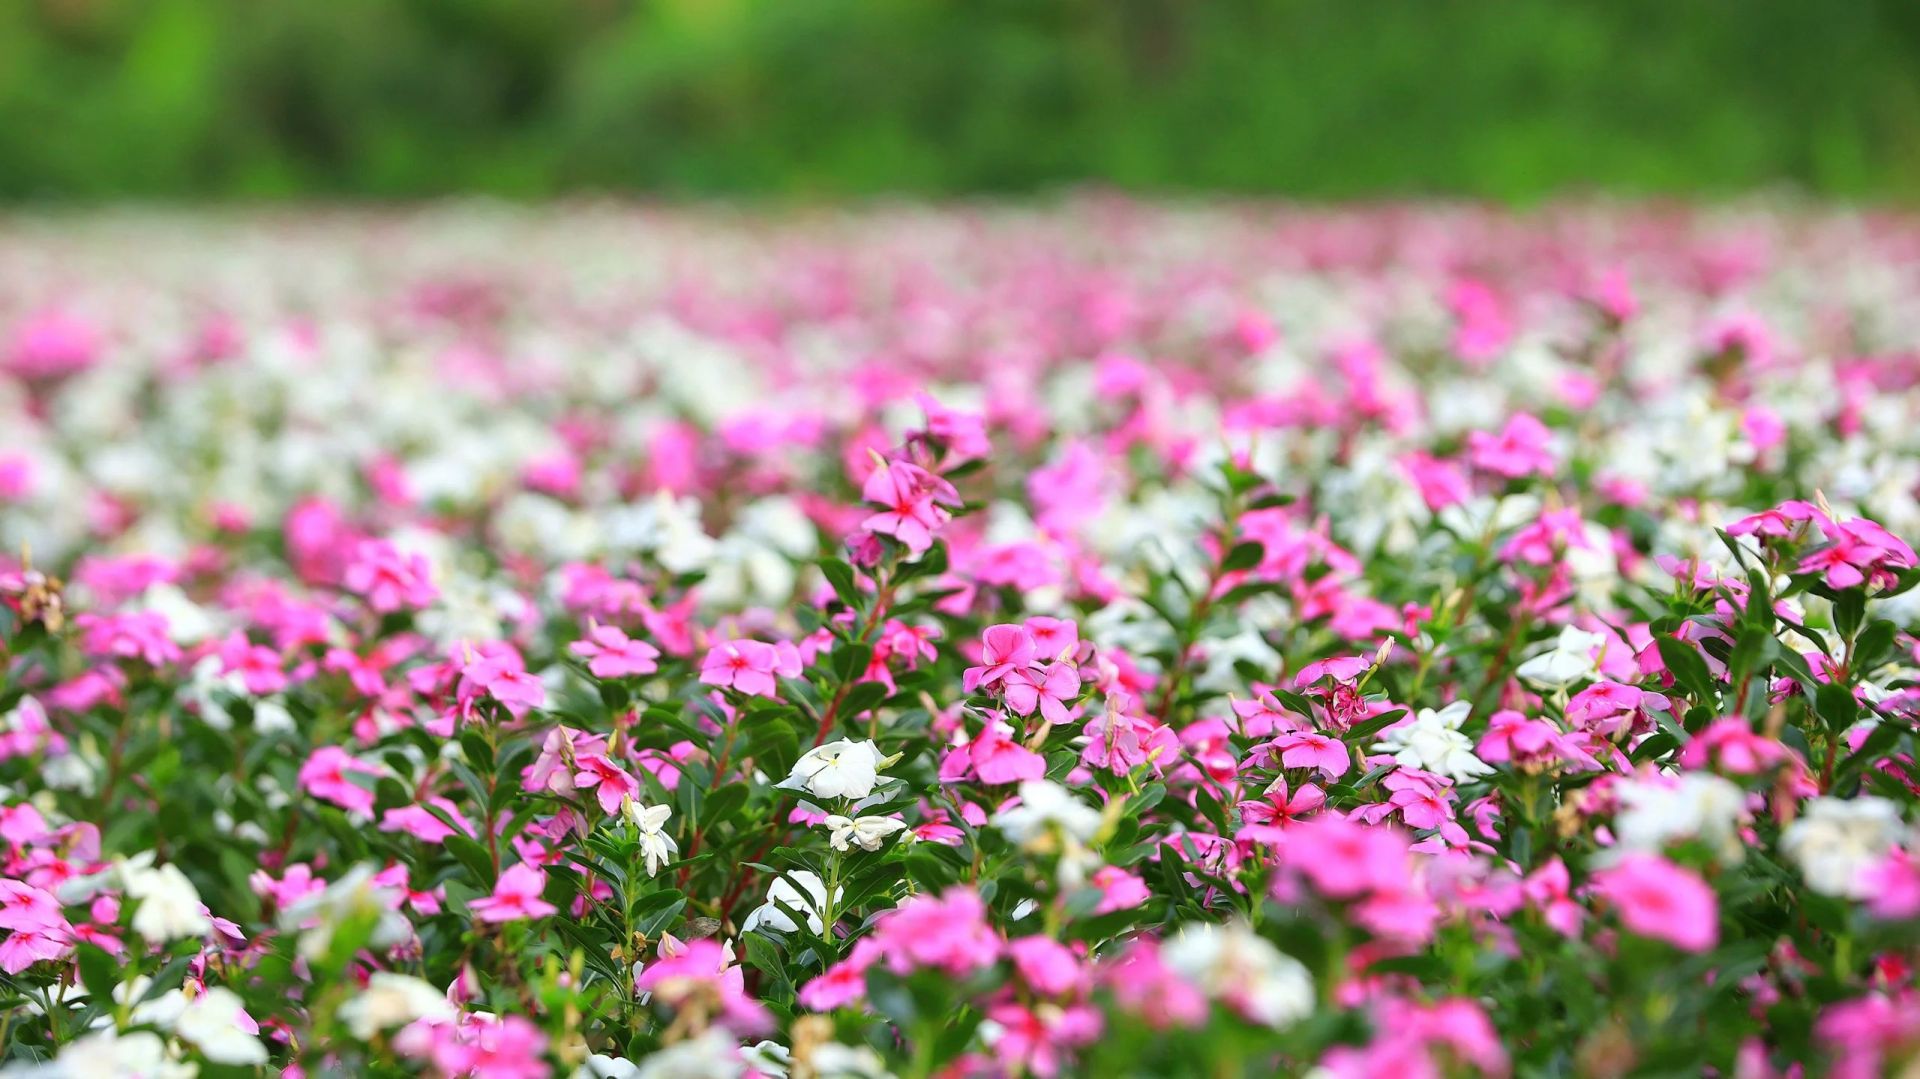 Vườn hoa dừa cạn được trồng làm thuốc nam, nhưng nhiều người đã đến check in vì vẻ đẹp ngất ngây của nó. Màu tím hồng đặc trưng của hoa đã níu chân biết bao du khách.